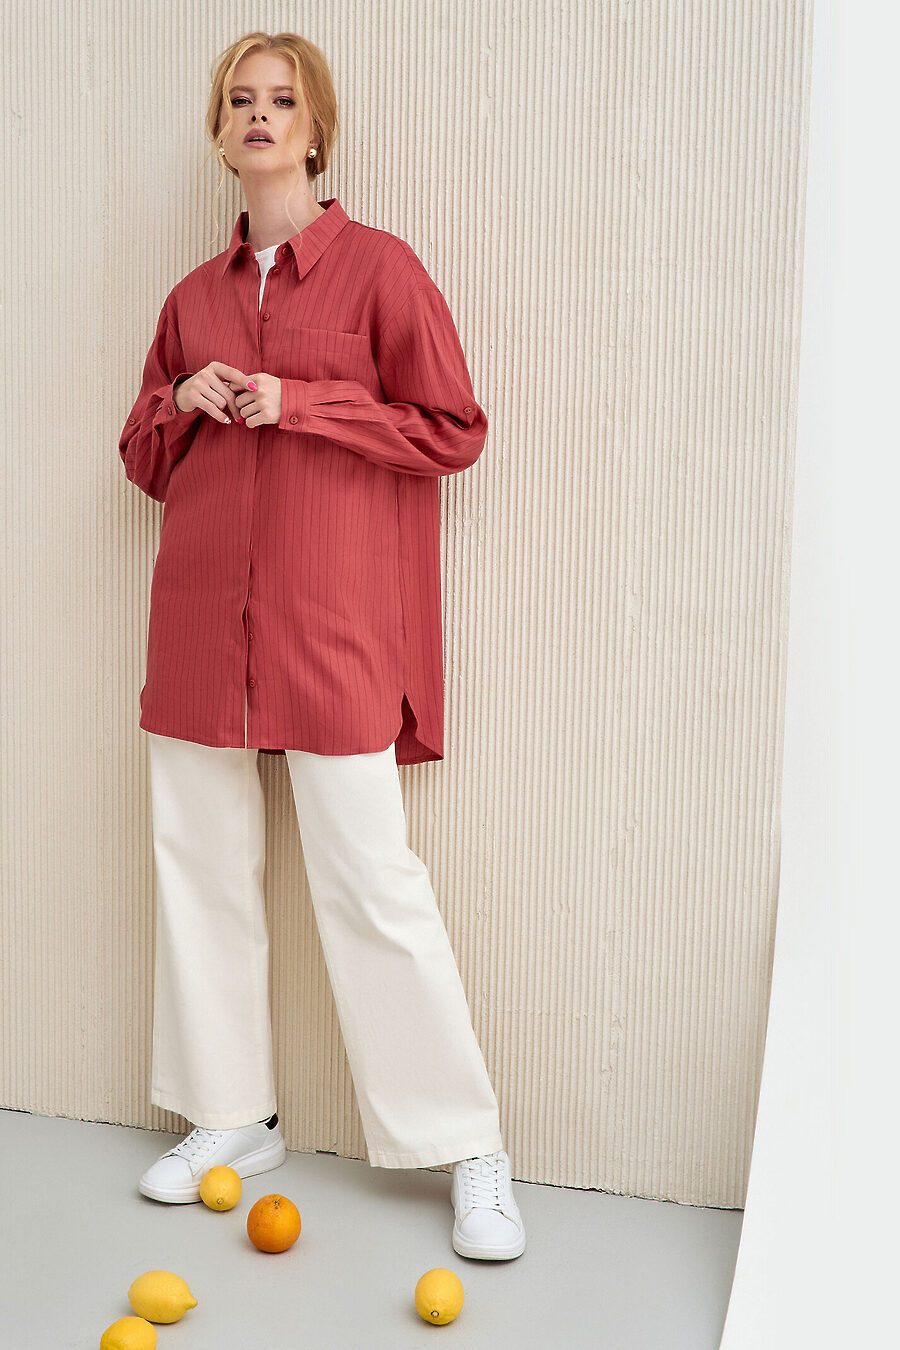 Блуза для женщин PANDA 796061 купить оптом от производителя. Совместная покупка женской одежды в OptMoyo